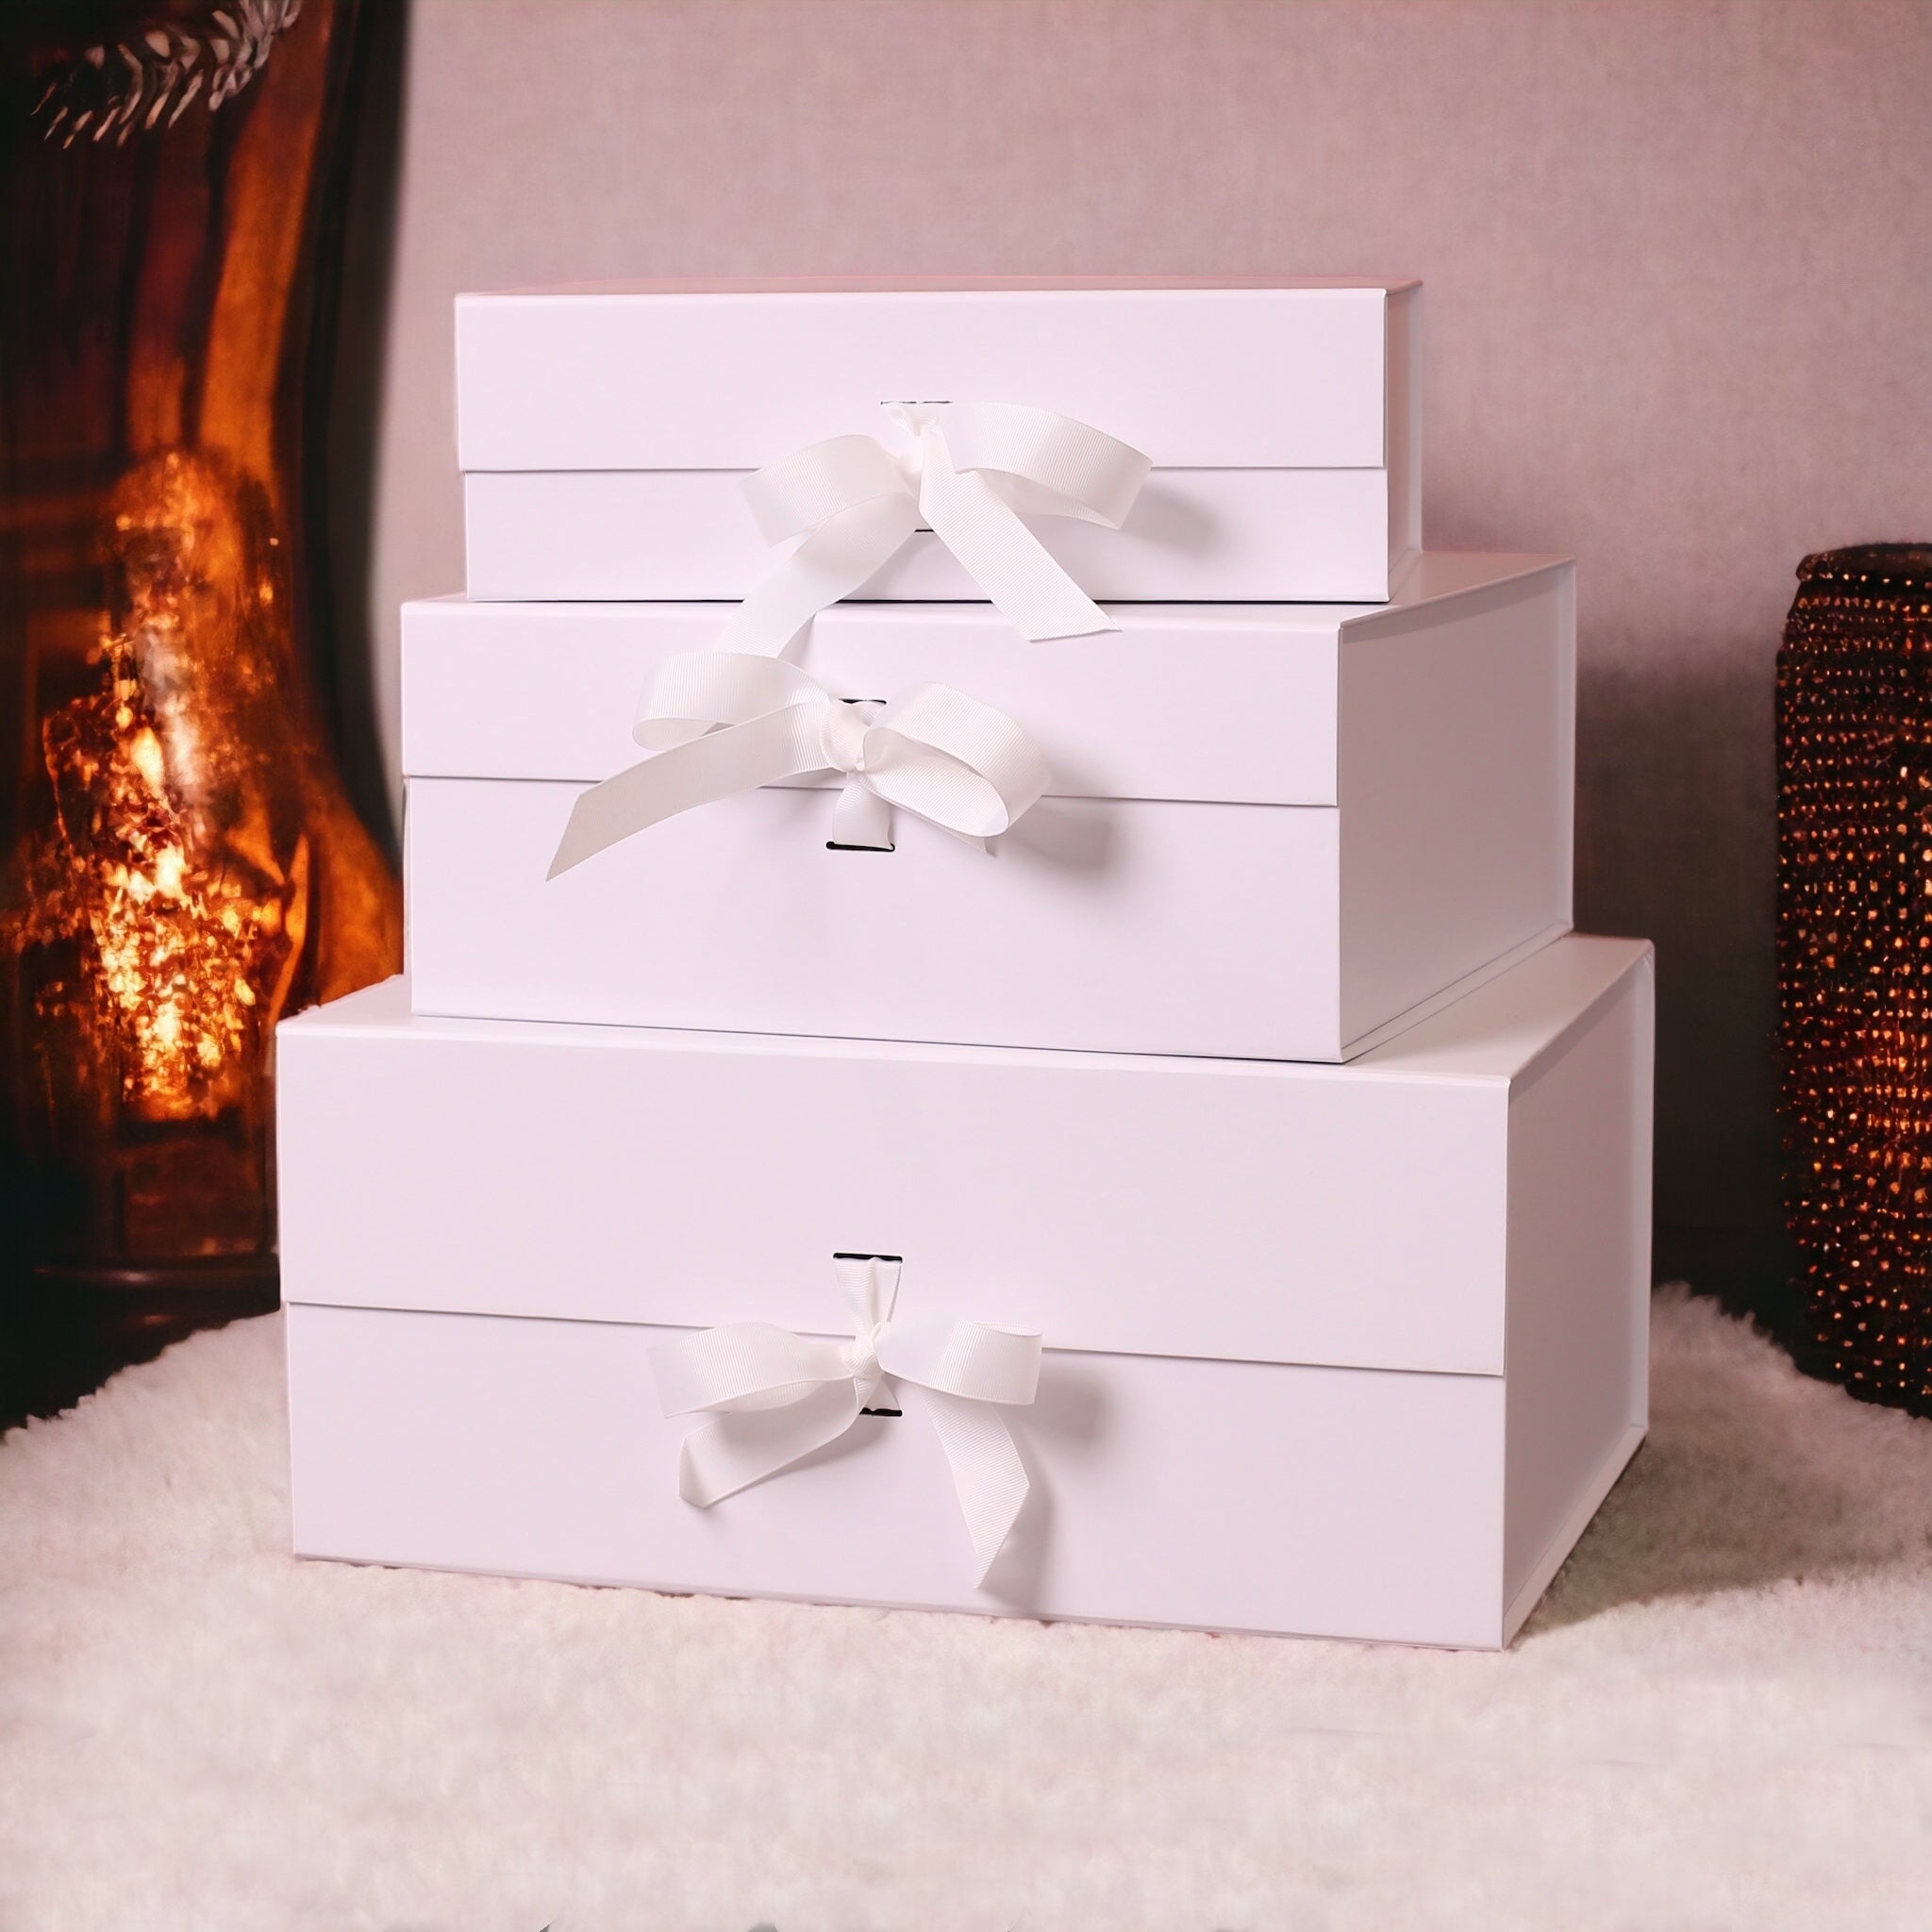 White Wine Gift Box: Sauvignon Blanc & Chocs!